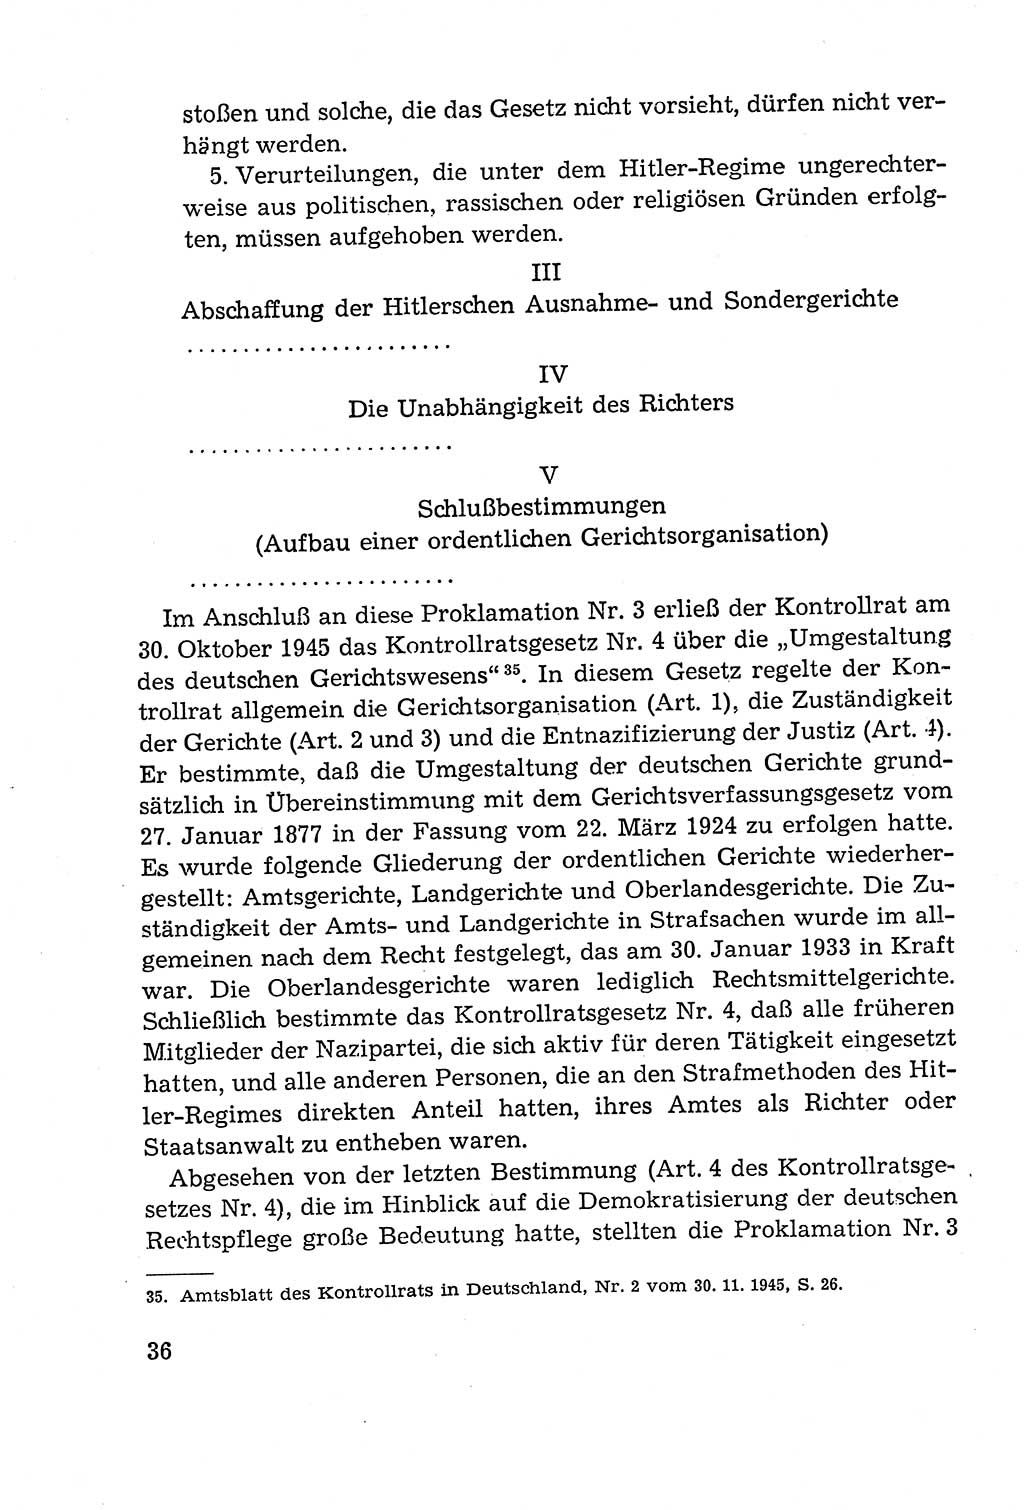 Leitfaden des Strafprozeßrechts der Deutschen Demokratischen Republik (DDR) 1959, Seite 36 (LF StPR DDR 1959, S. 36)